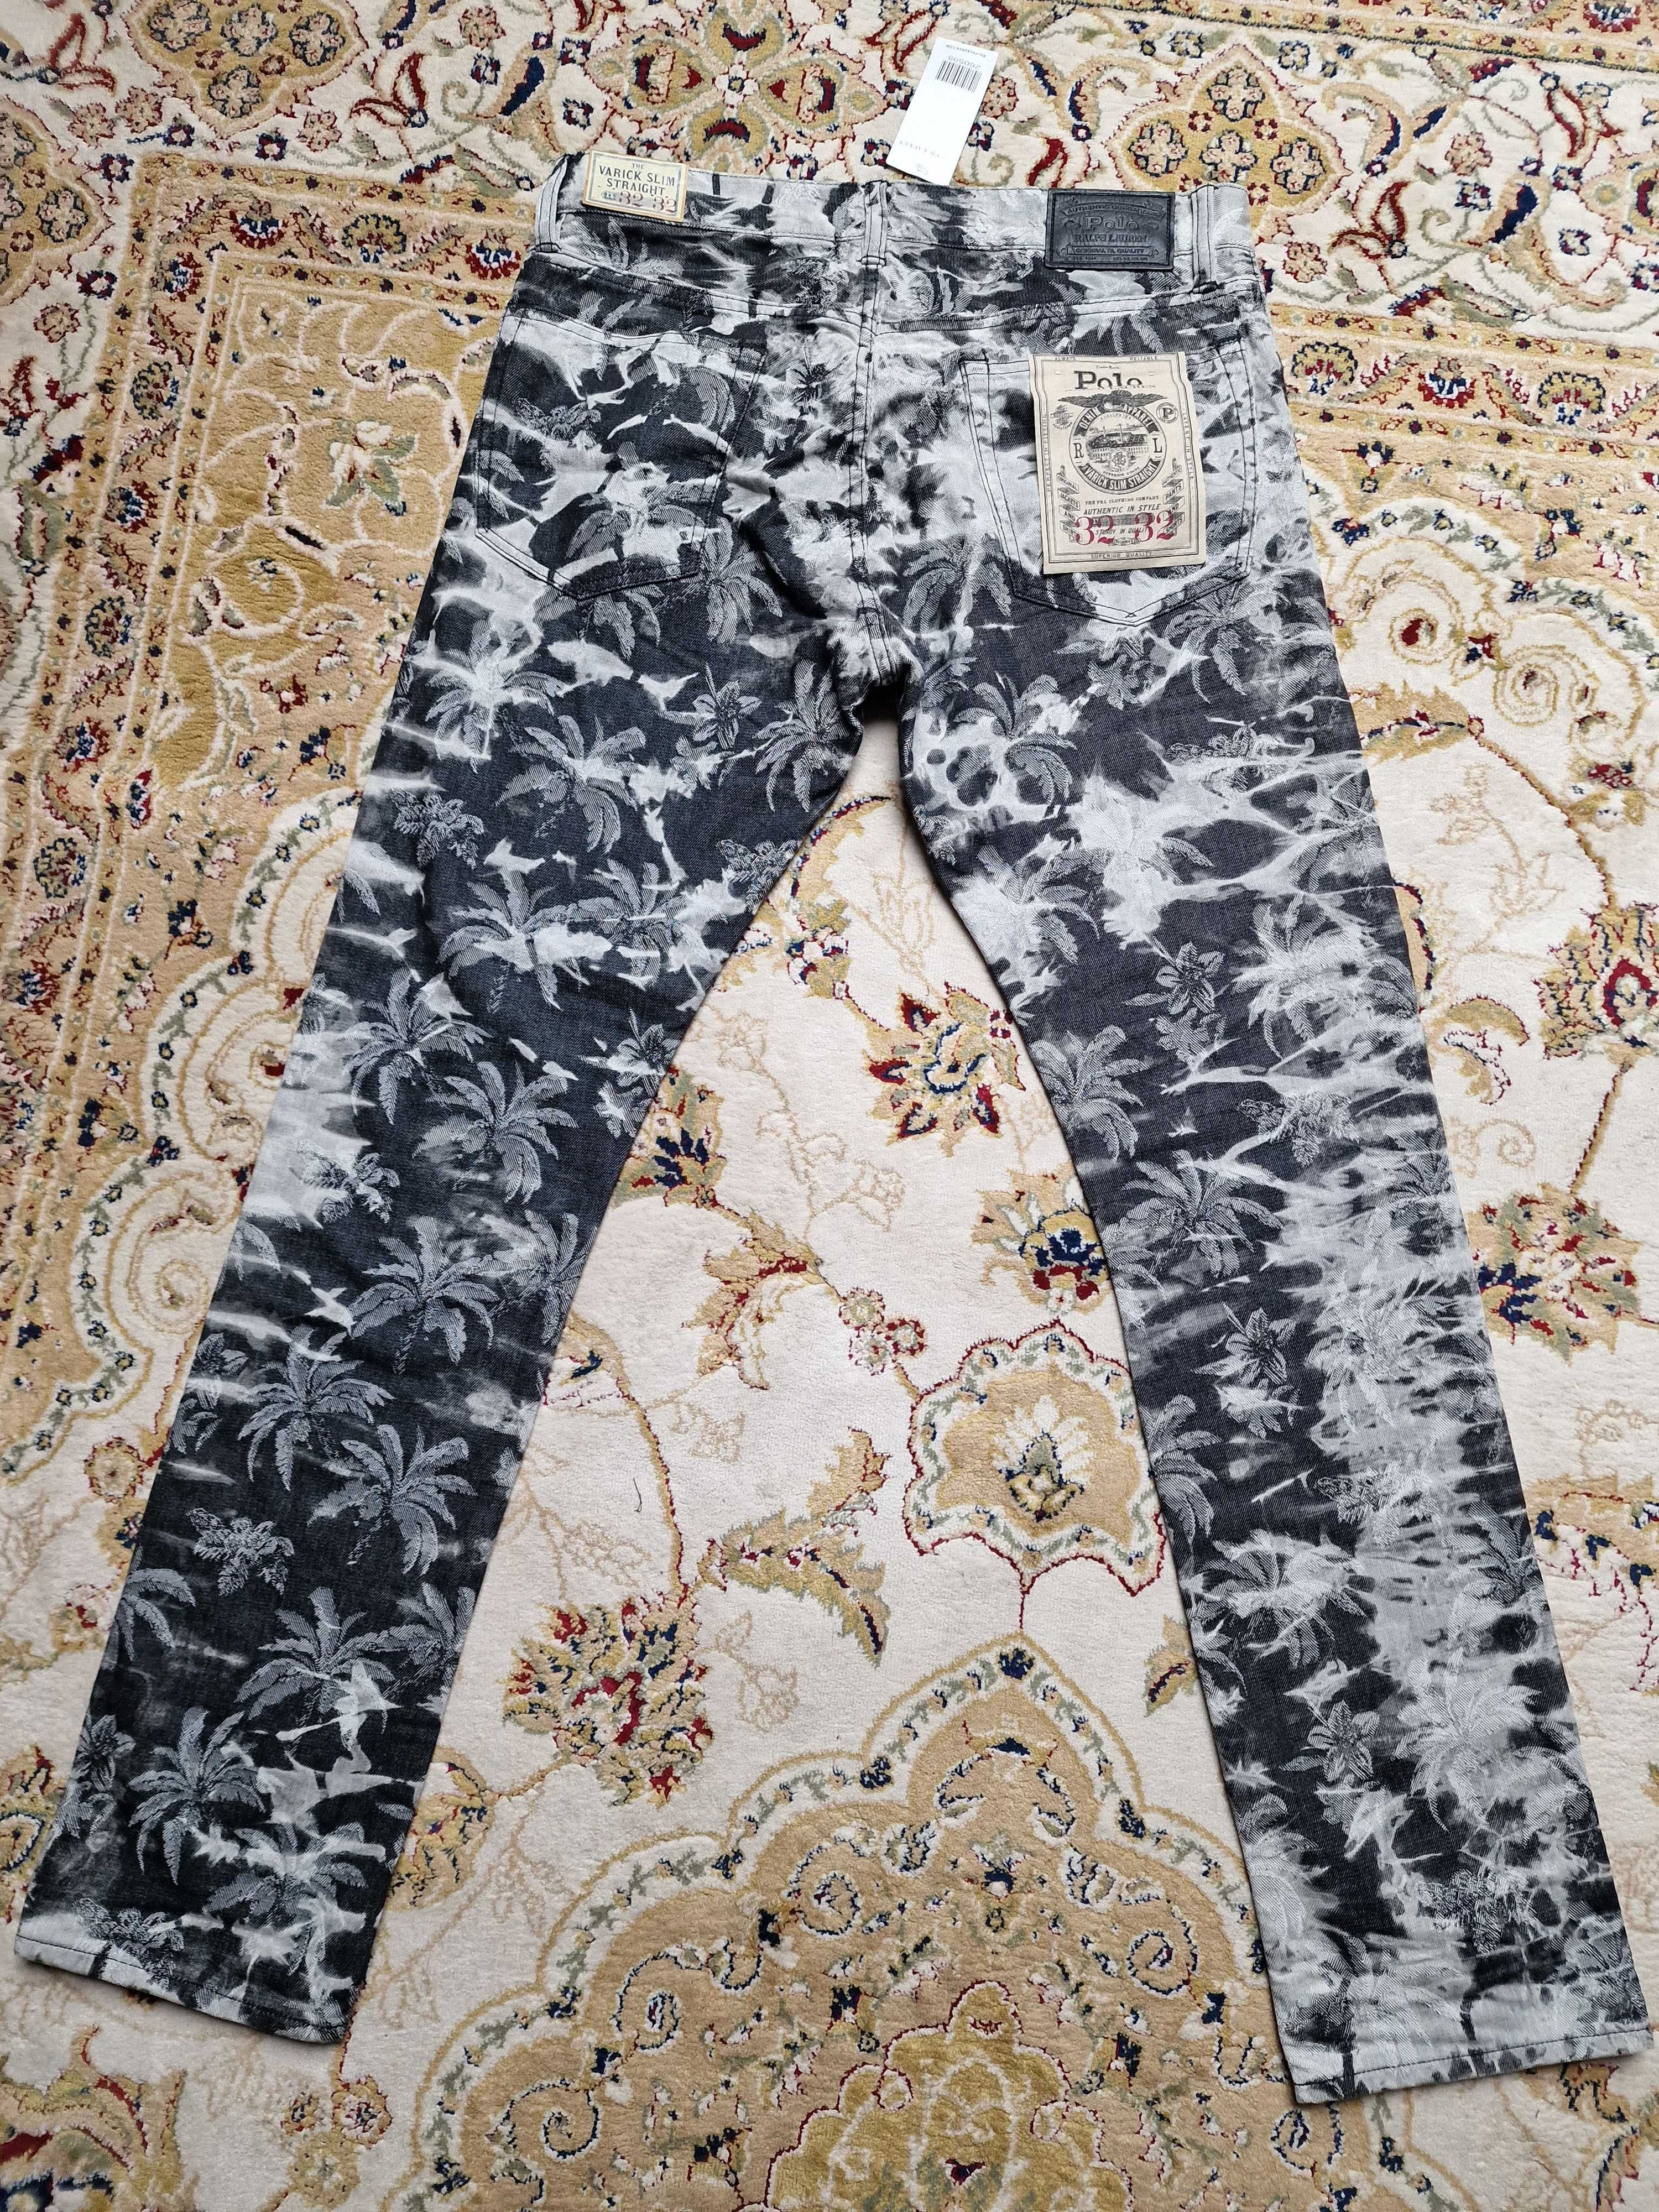 NOWE spodnie Polo Ralph Lauren M ciekawe jedyne takie na OLX 200zł